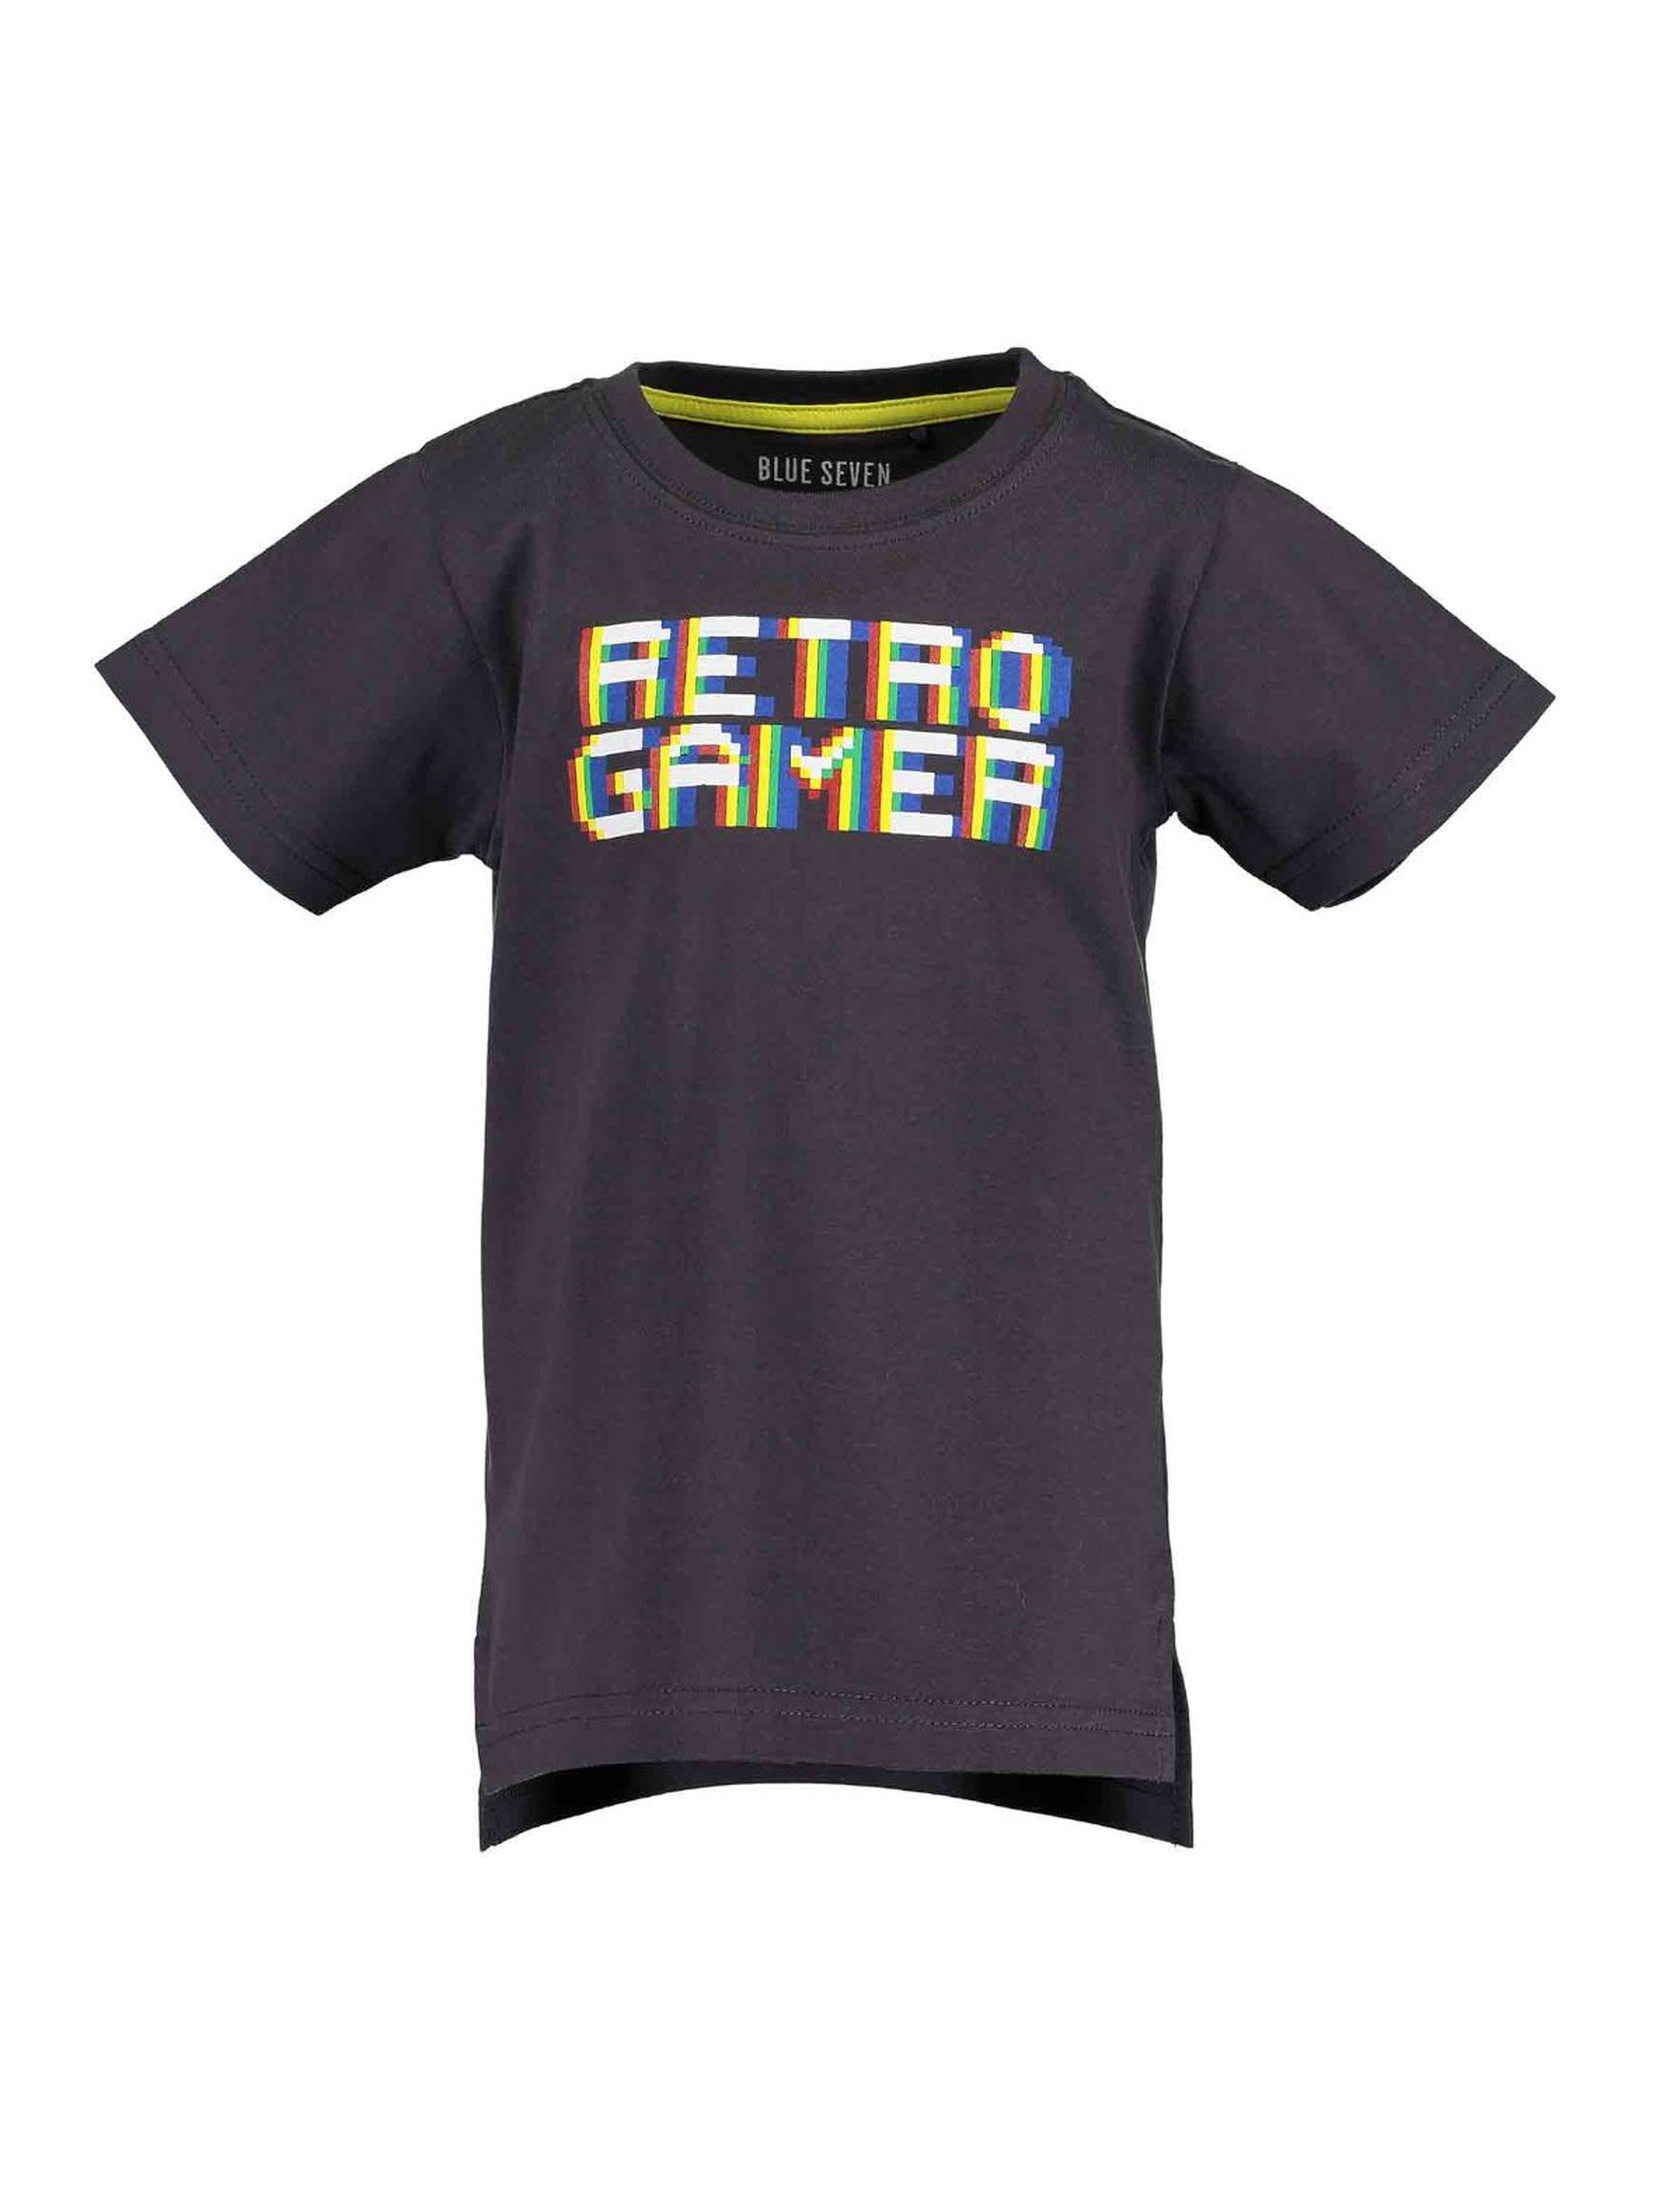 T-Shirt chłopięcy czarny z napisem -Retro gamer